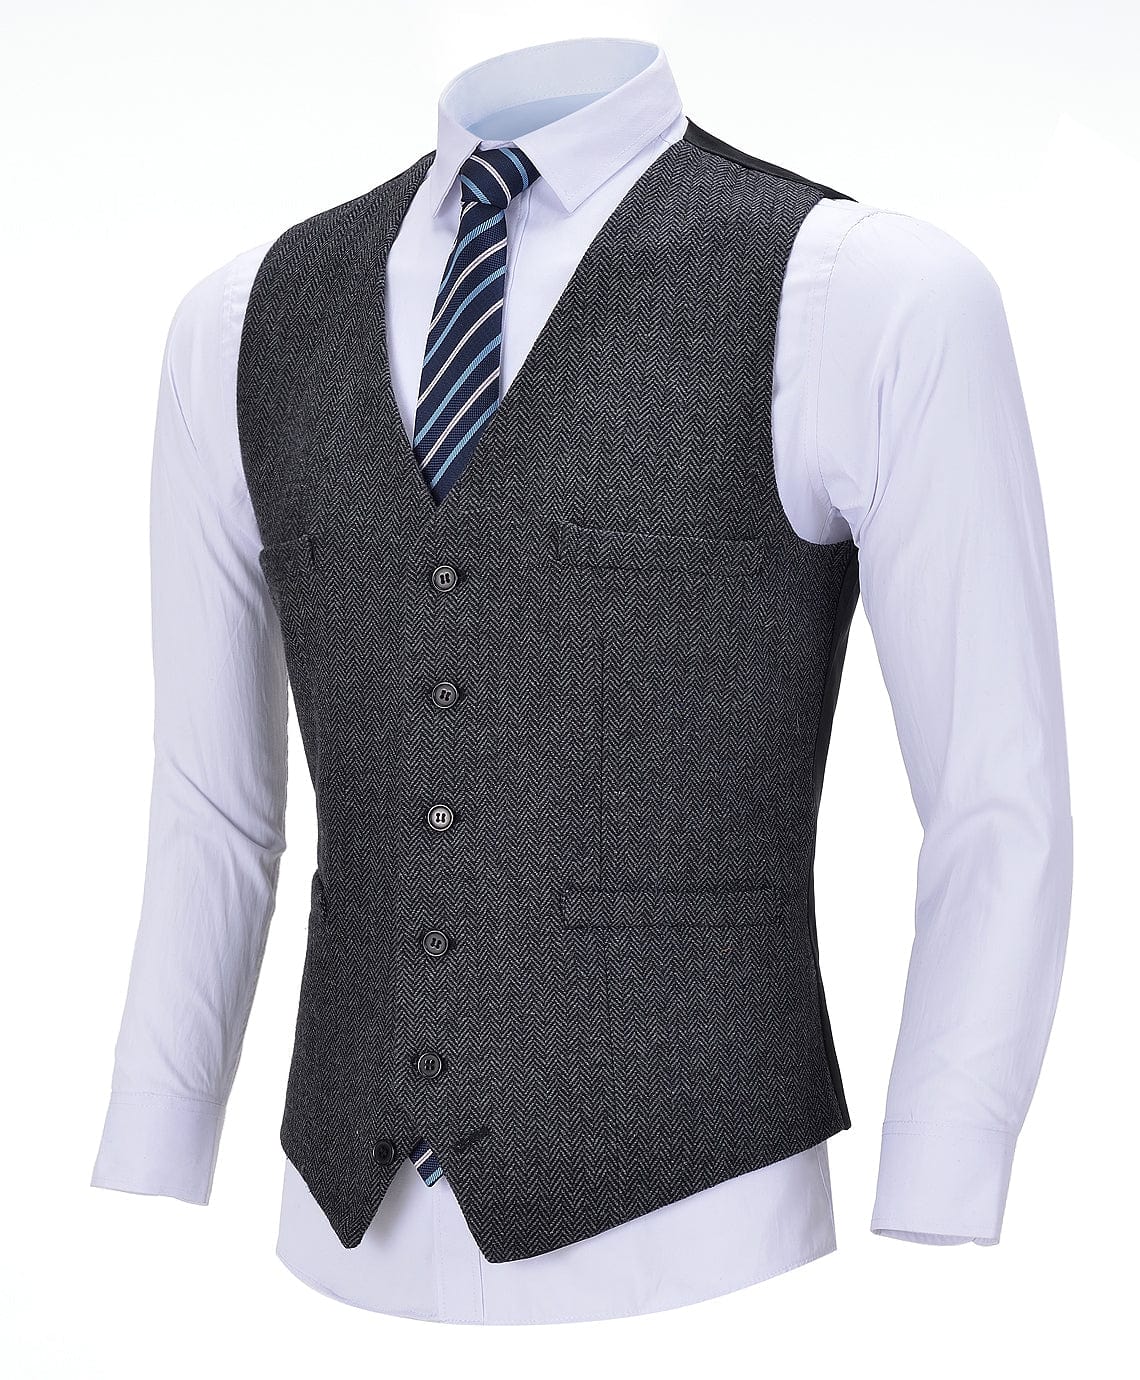 ceehuteey Men's Business Suit Vest V Neck Herringbone Dress Waistcoat